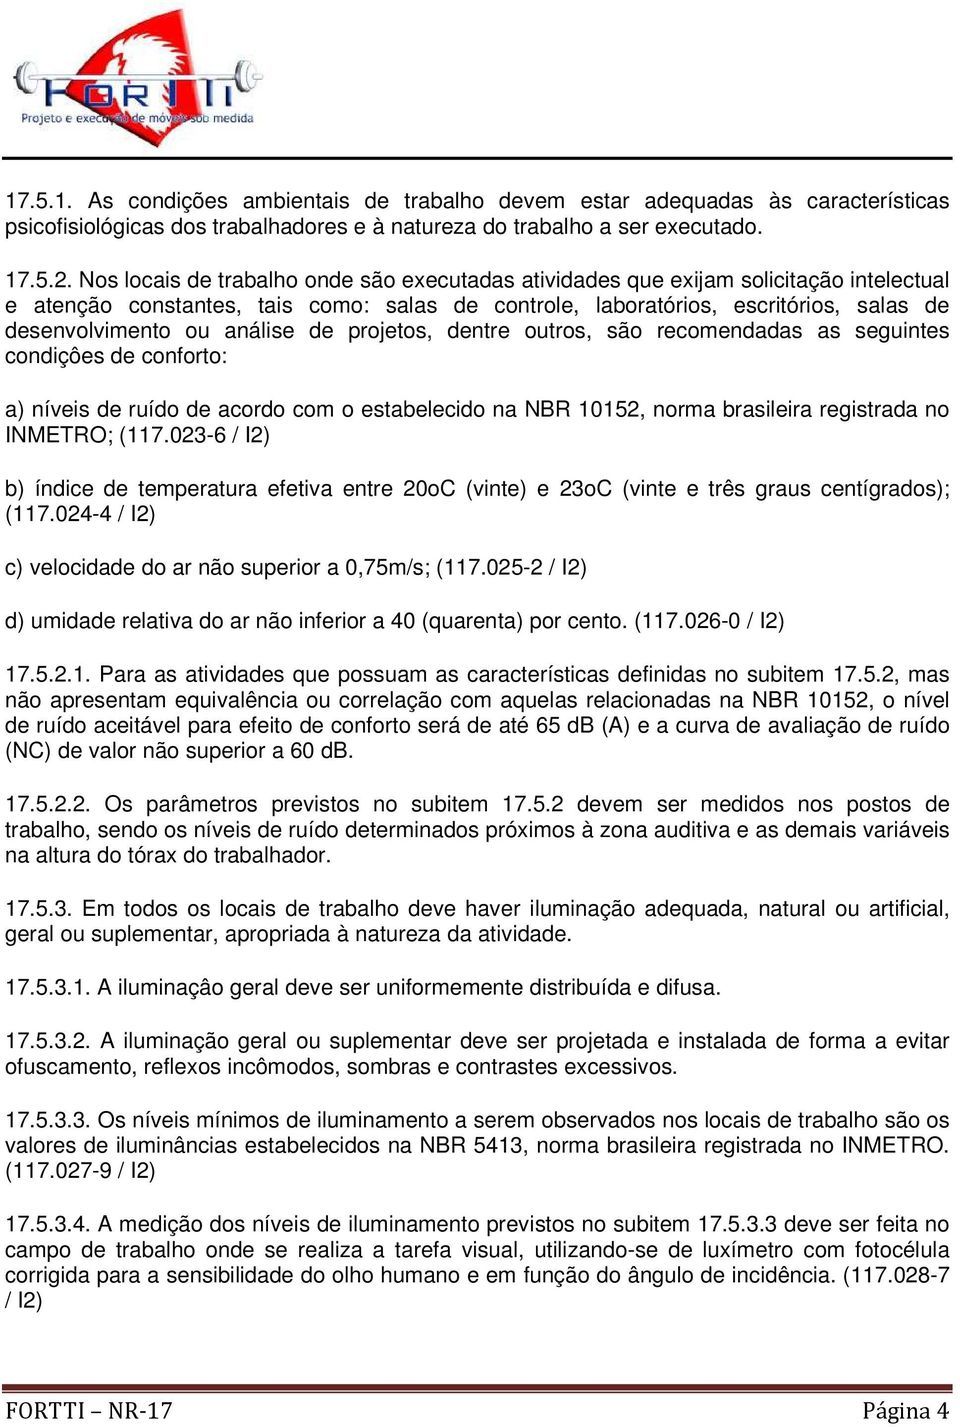 análise de projetos, dentre outros, são recomendadas as seguintes condiçôes de conforto: a) níveis de ruído de acordo com o estabelecido na NBR 10152, norma brasileira registrada no INMETRO; (117.